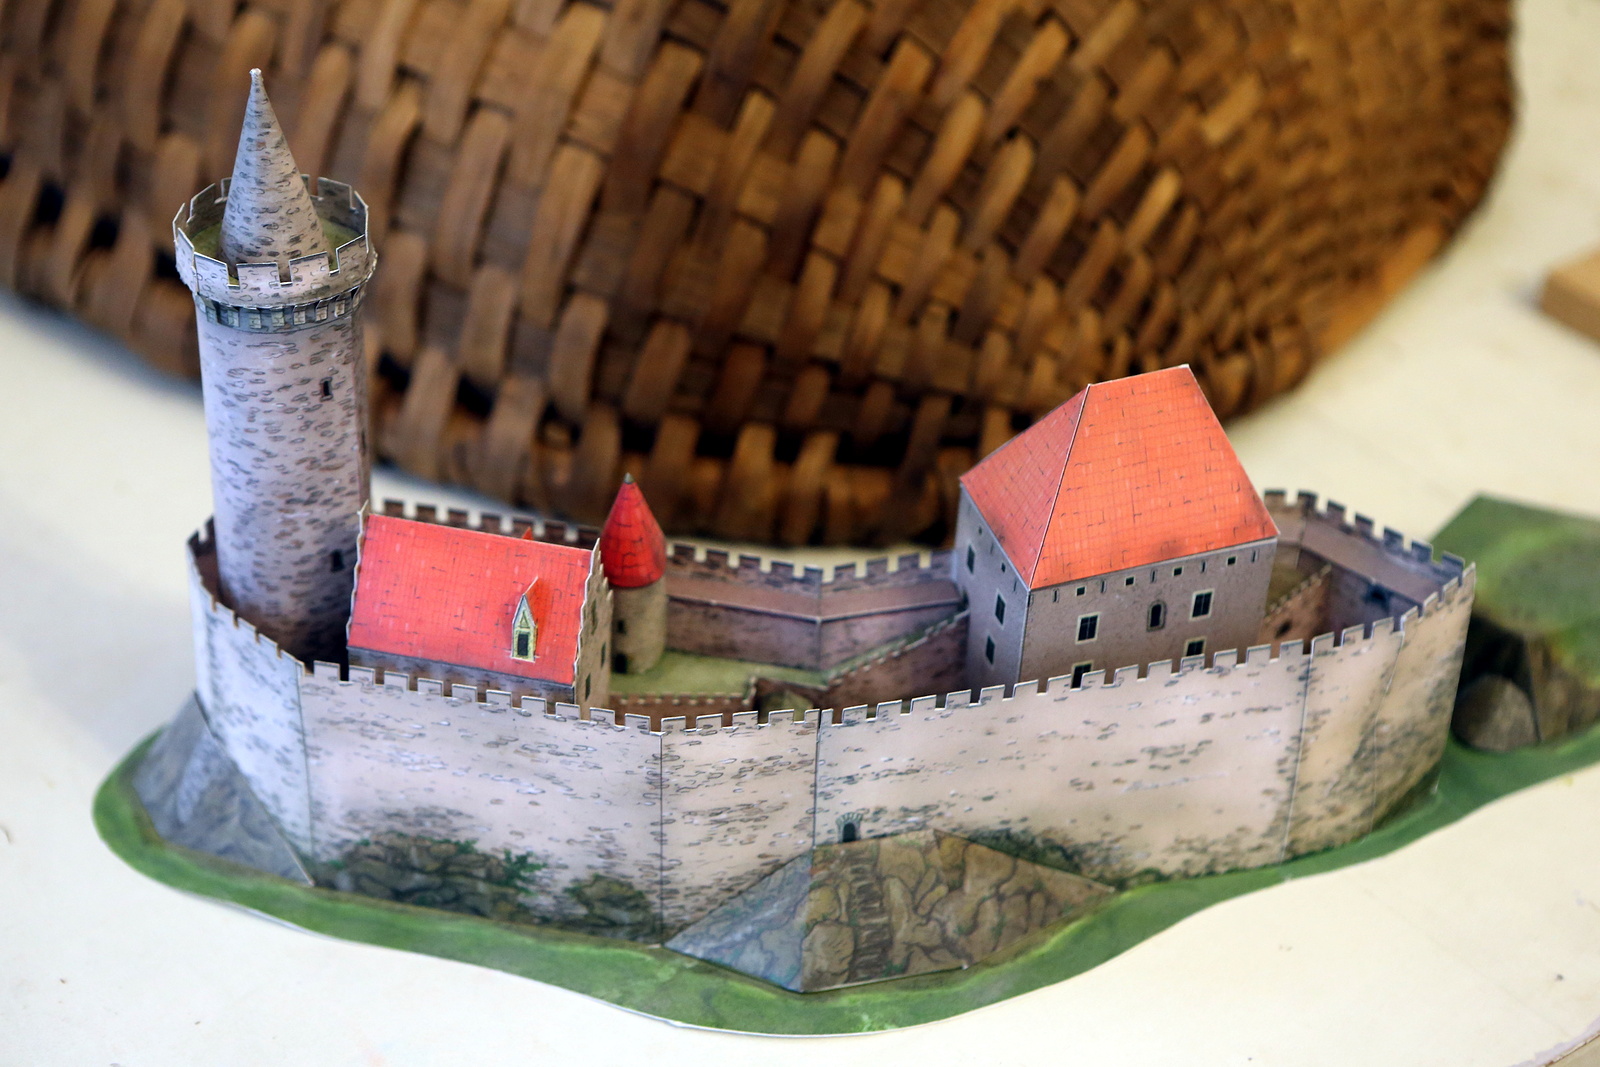 Zámek ve Vizovicích zahájil sezónu, láká výstavou modelů hradů a zámků -  Zlínský deník